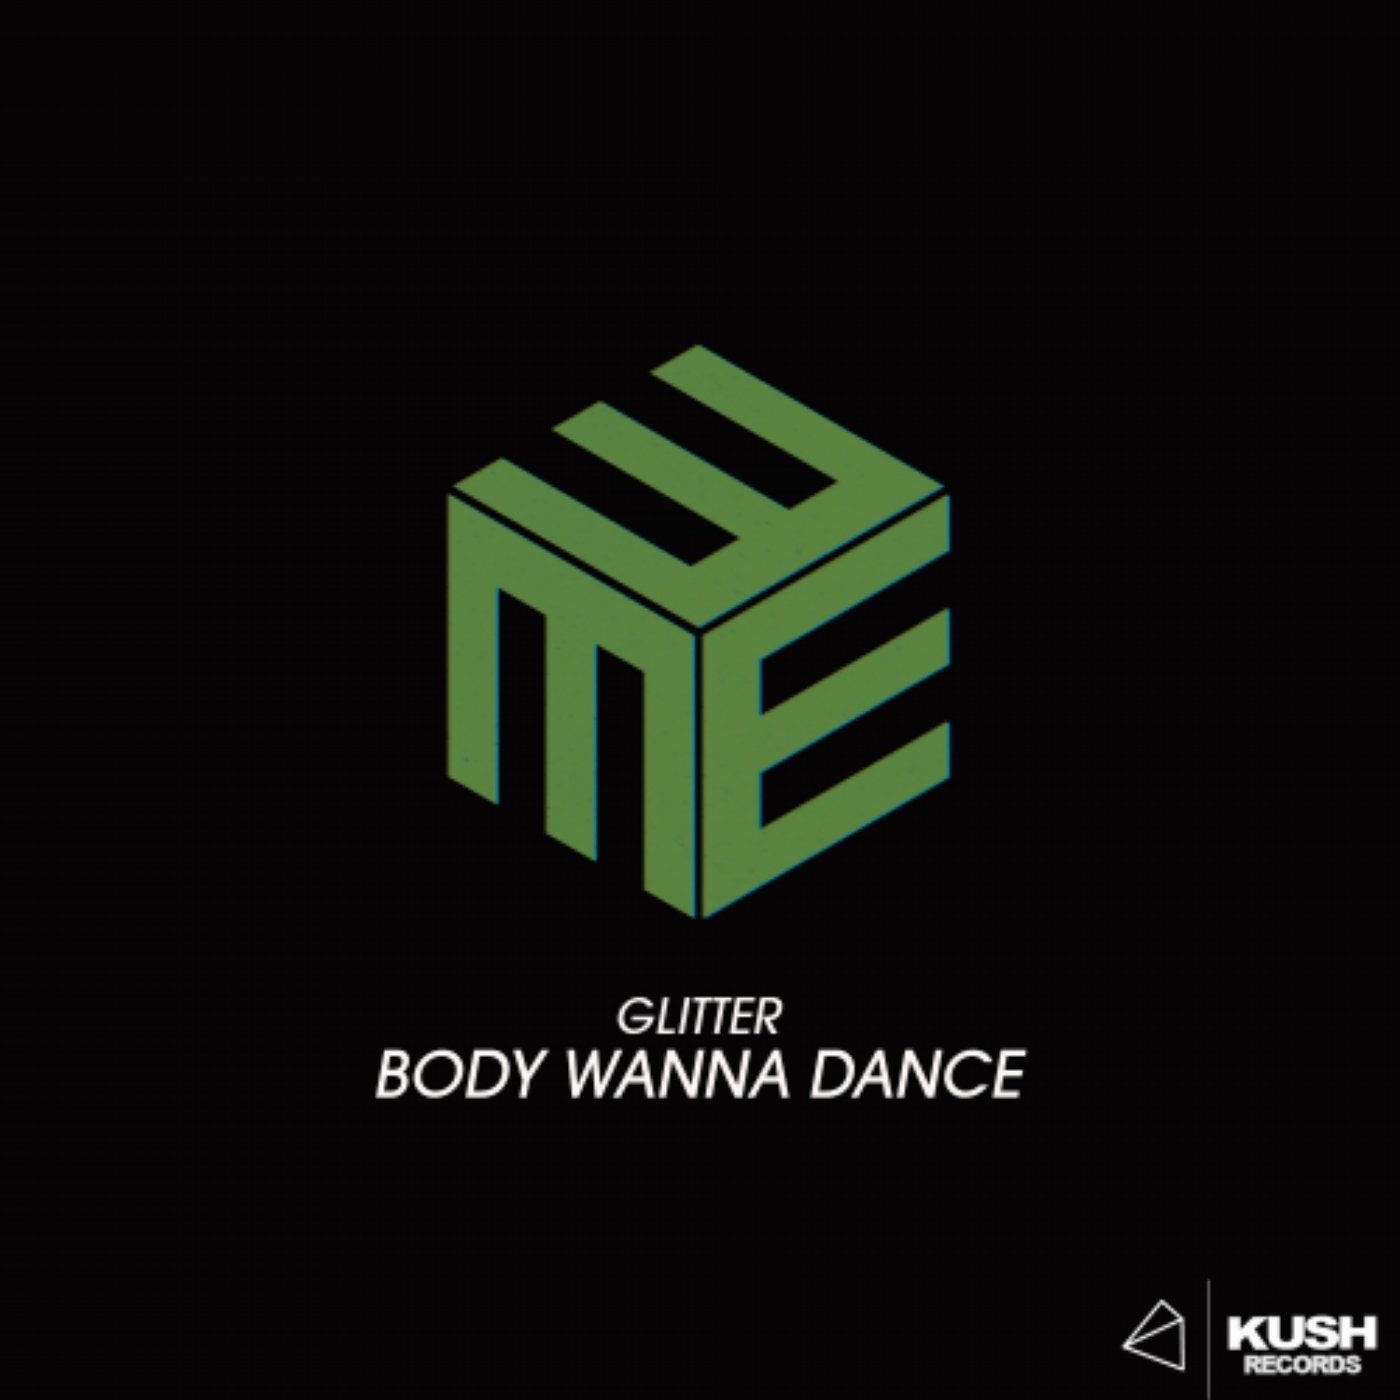 Body wanna dance